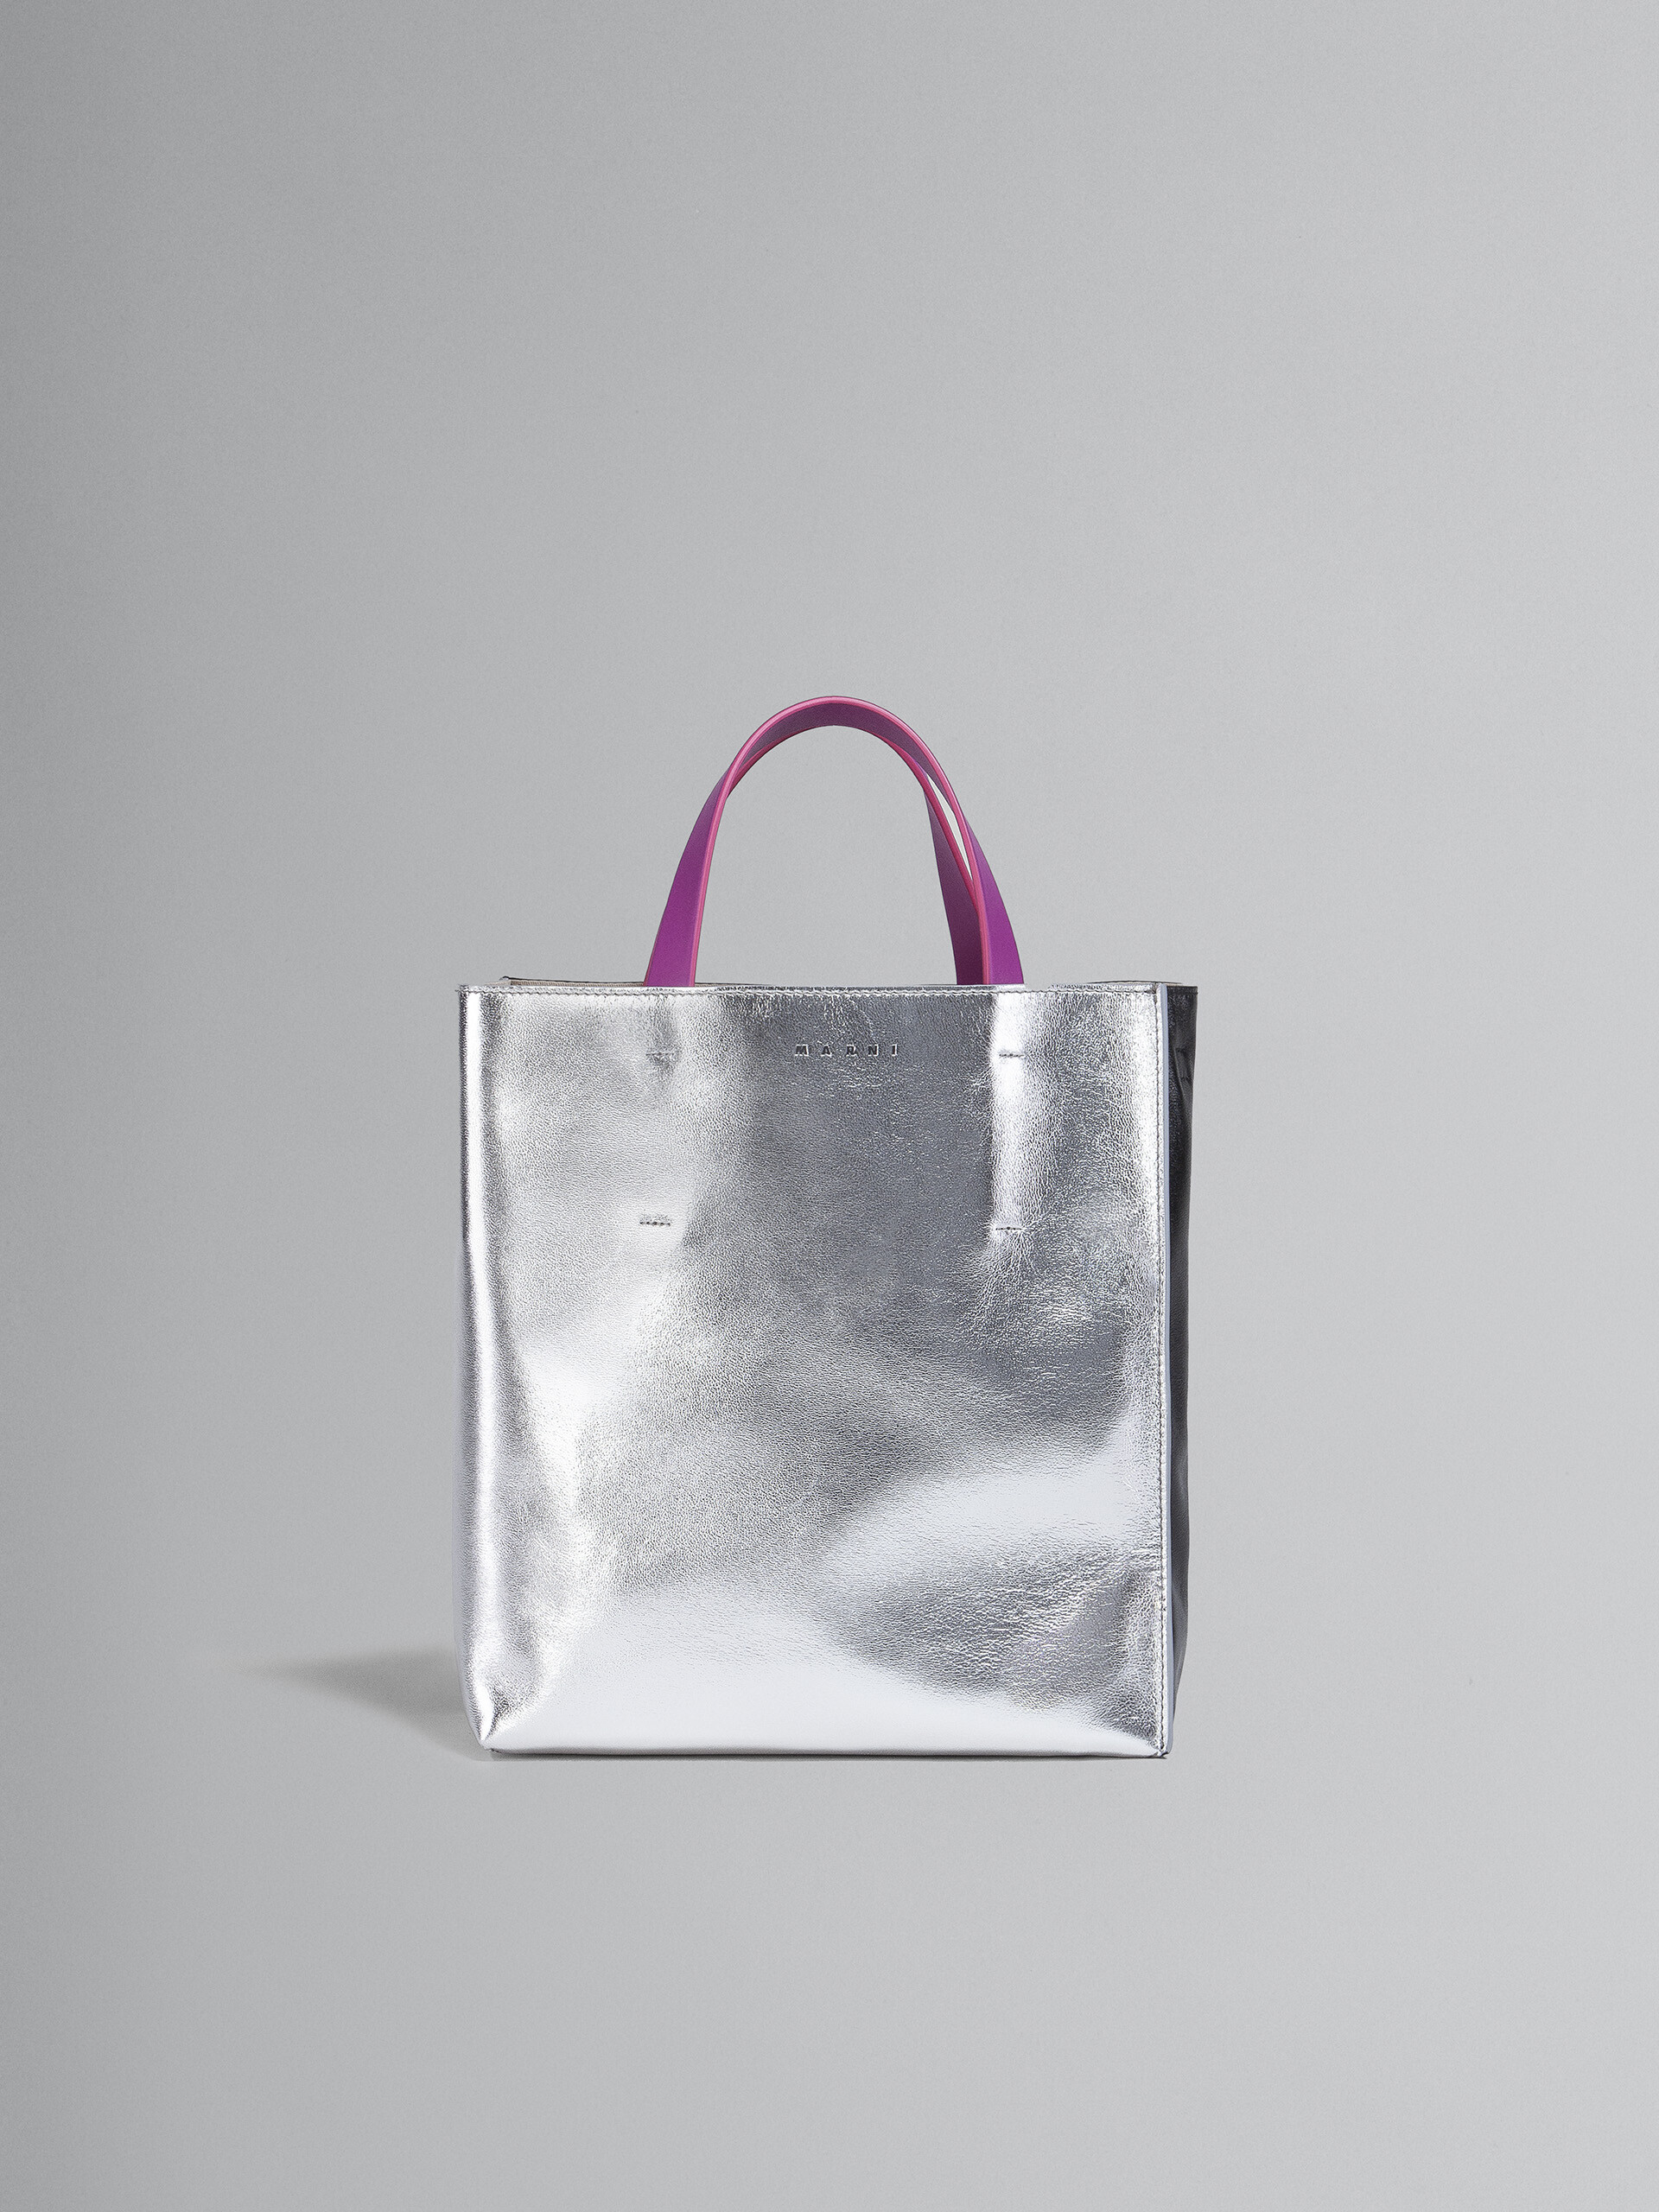 Silber-schwarz-fuchsiafarbene, kleine MUSEO SOFT Tasche aus Metallic-Leder - Shopper - Image 1